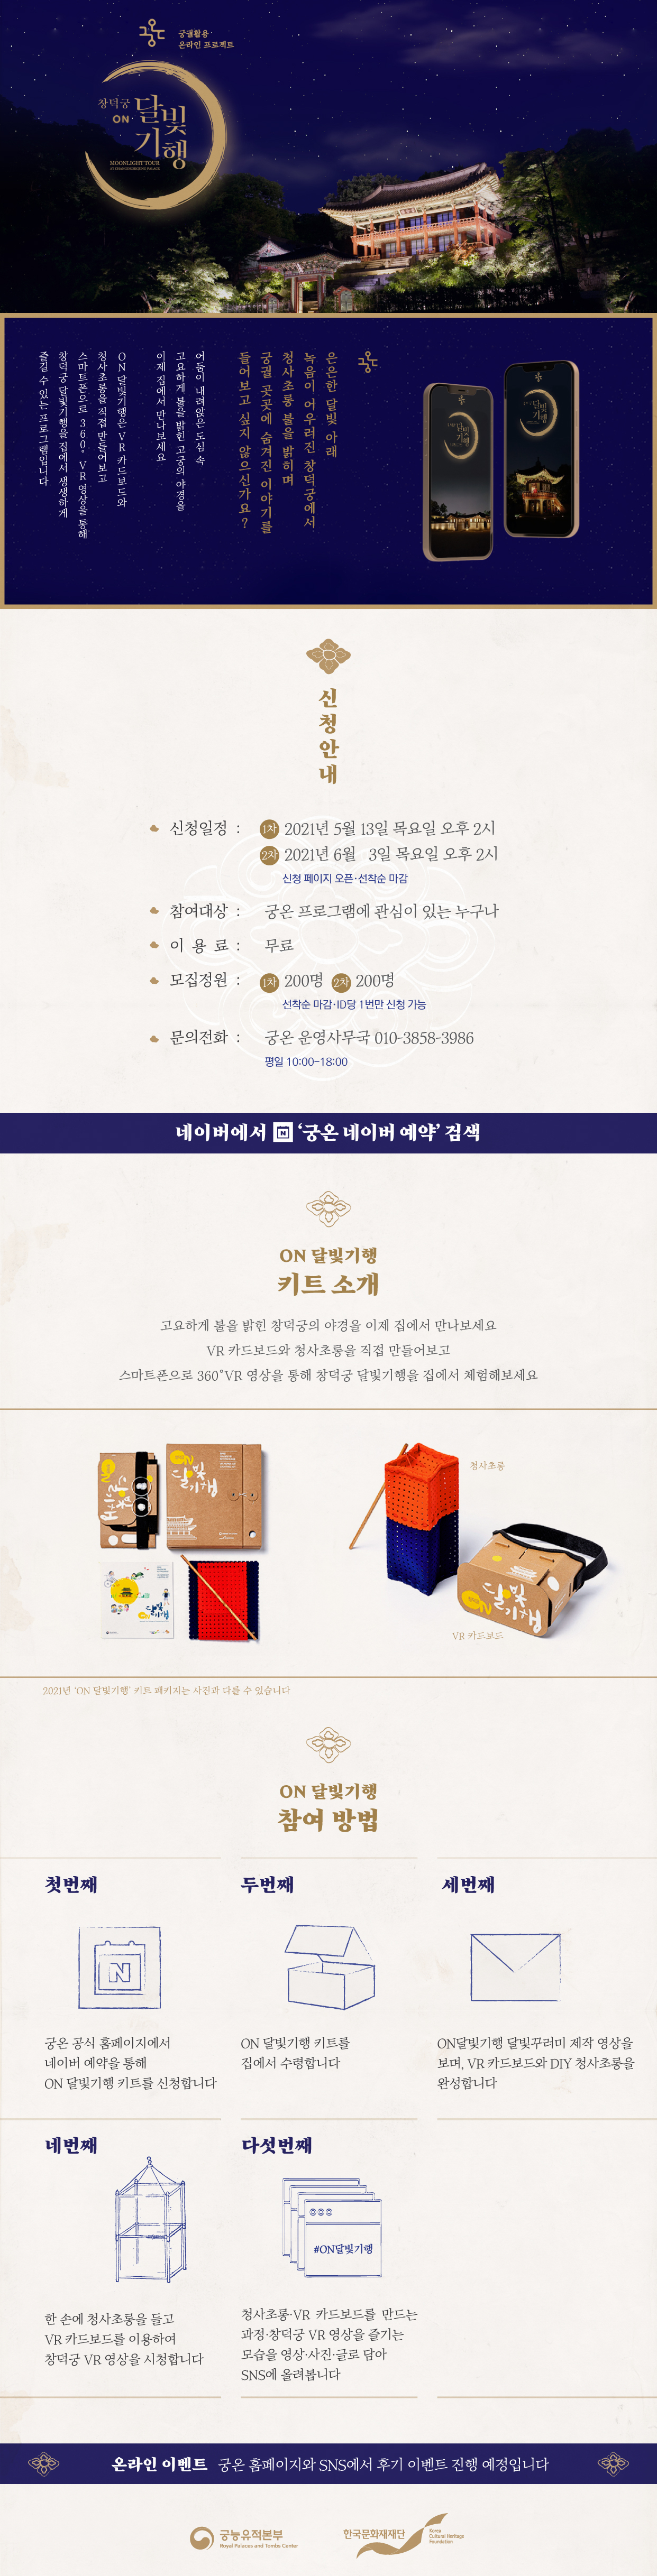 궁궐활용 온라인 프로젝트 창덕궁 ON 달빛기행 포스터(자세한 내용 하단 참조)